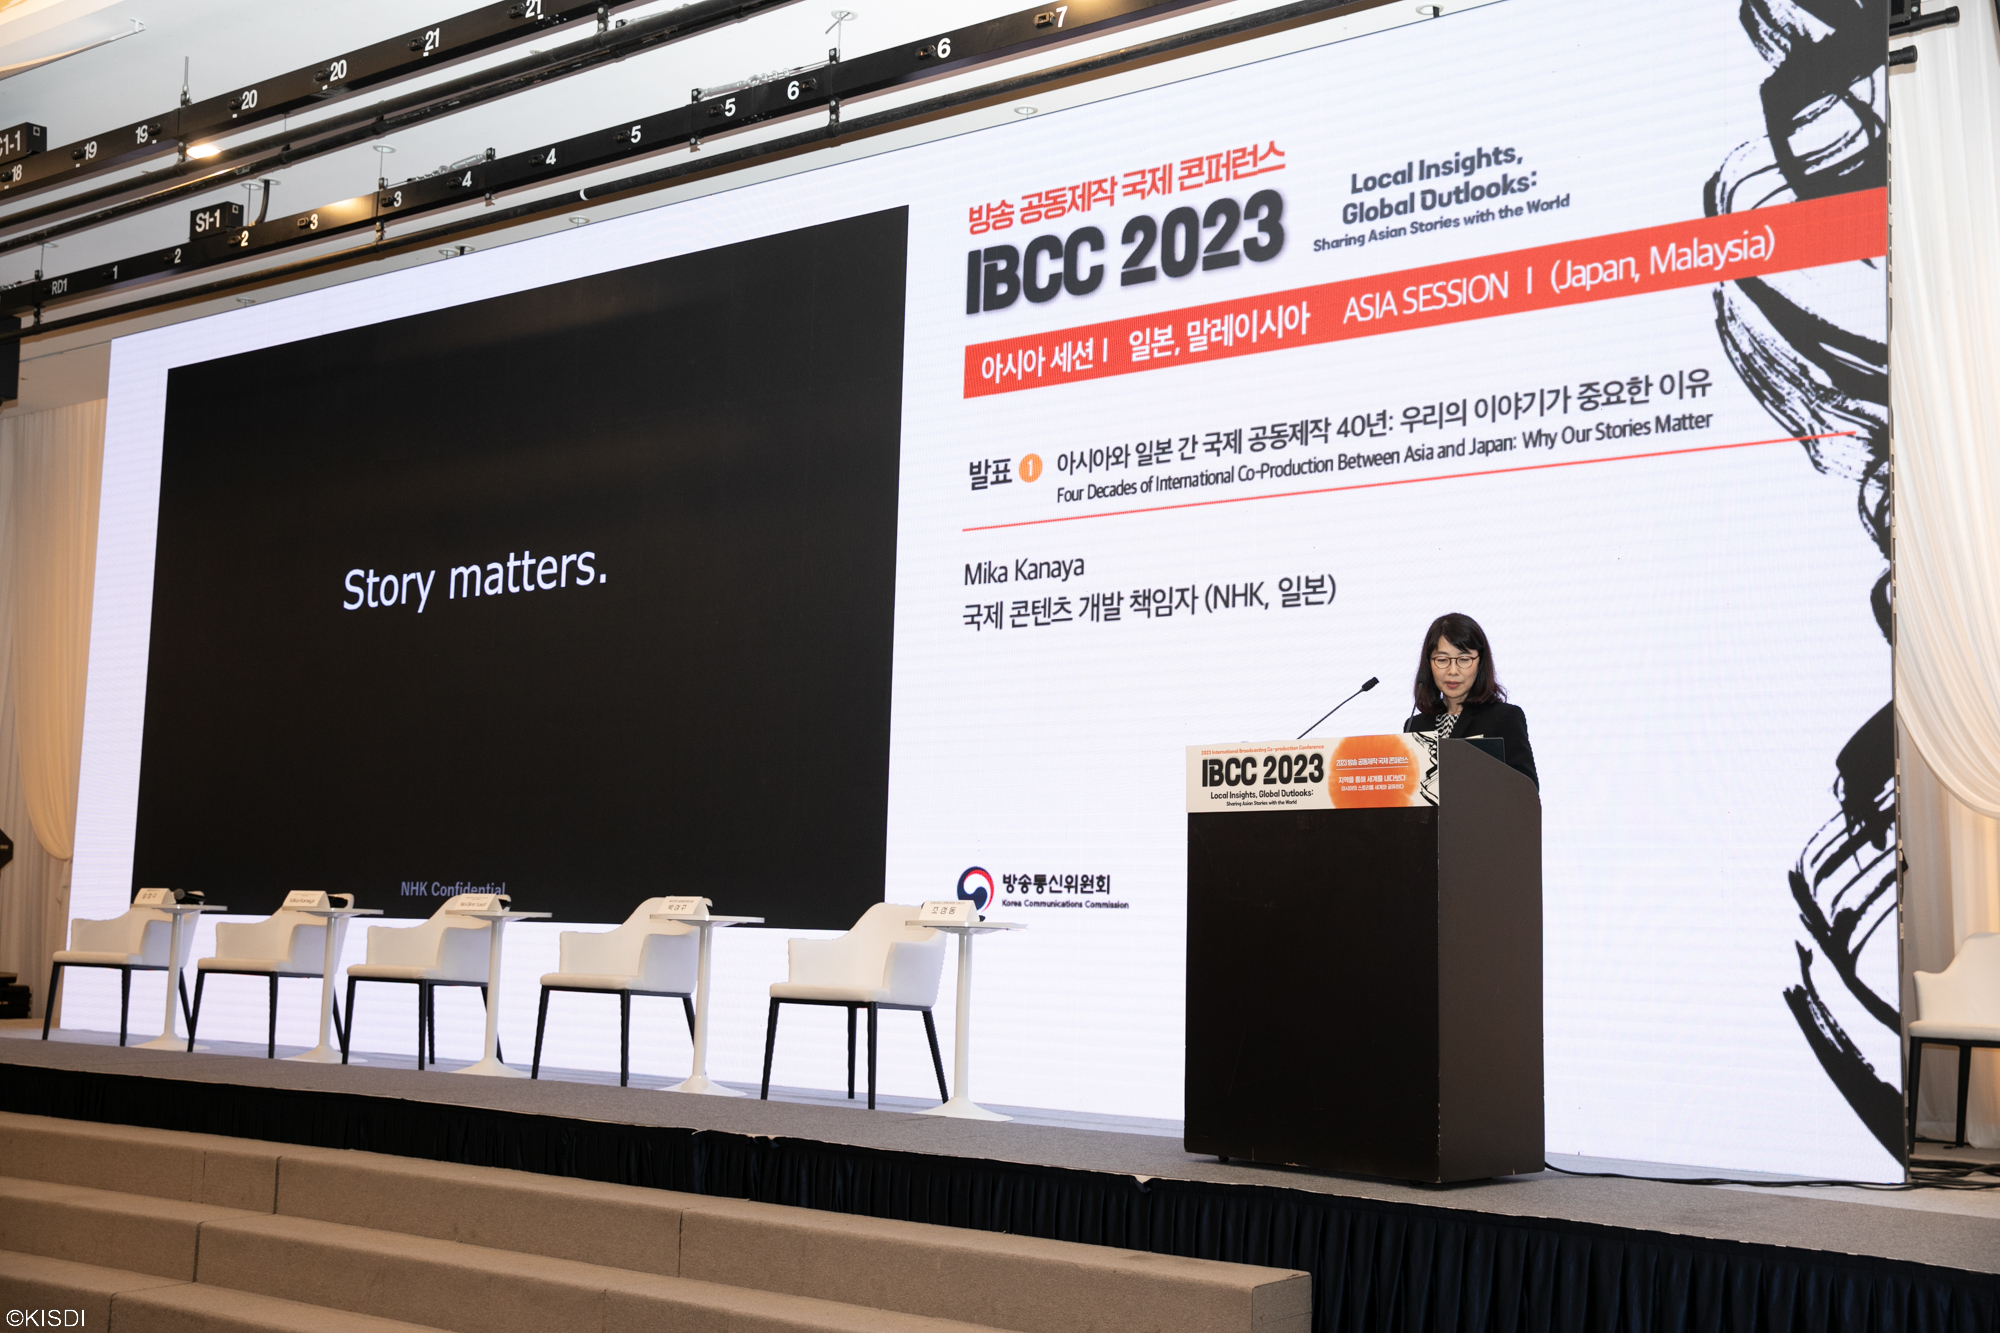 2023 방송 공동제작 국제 콘퍼런스